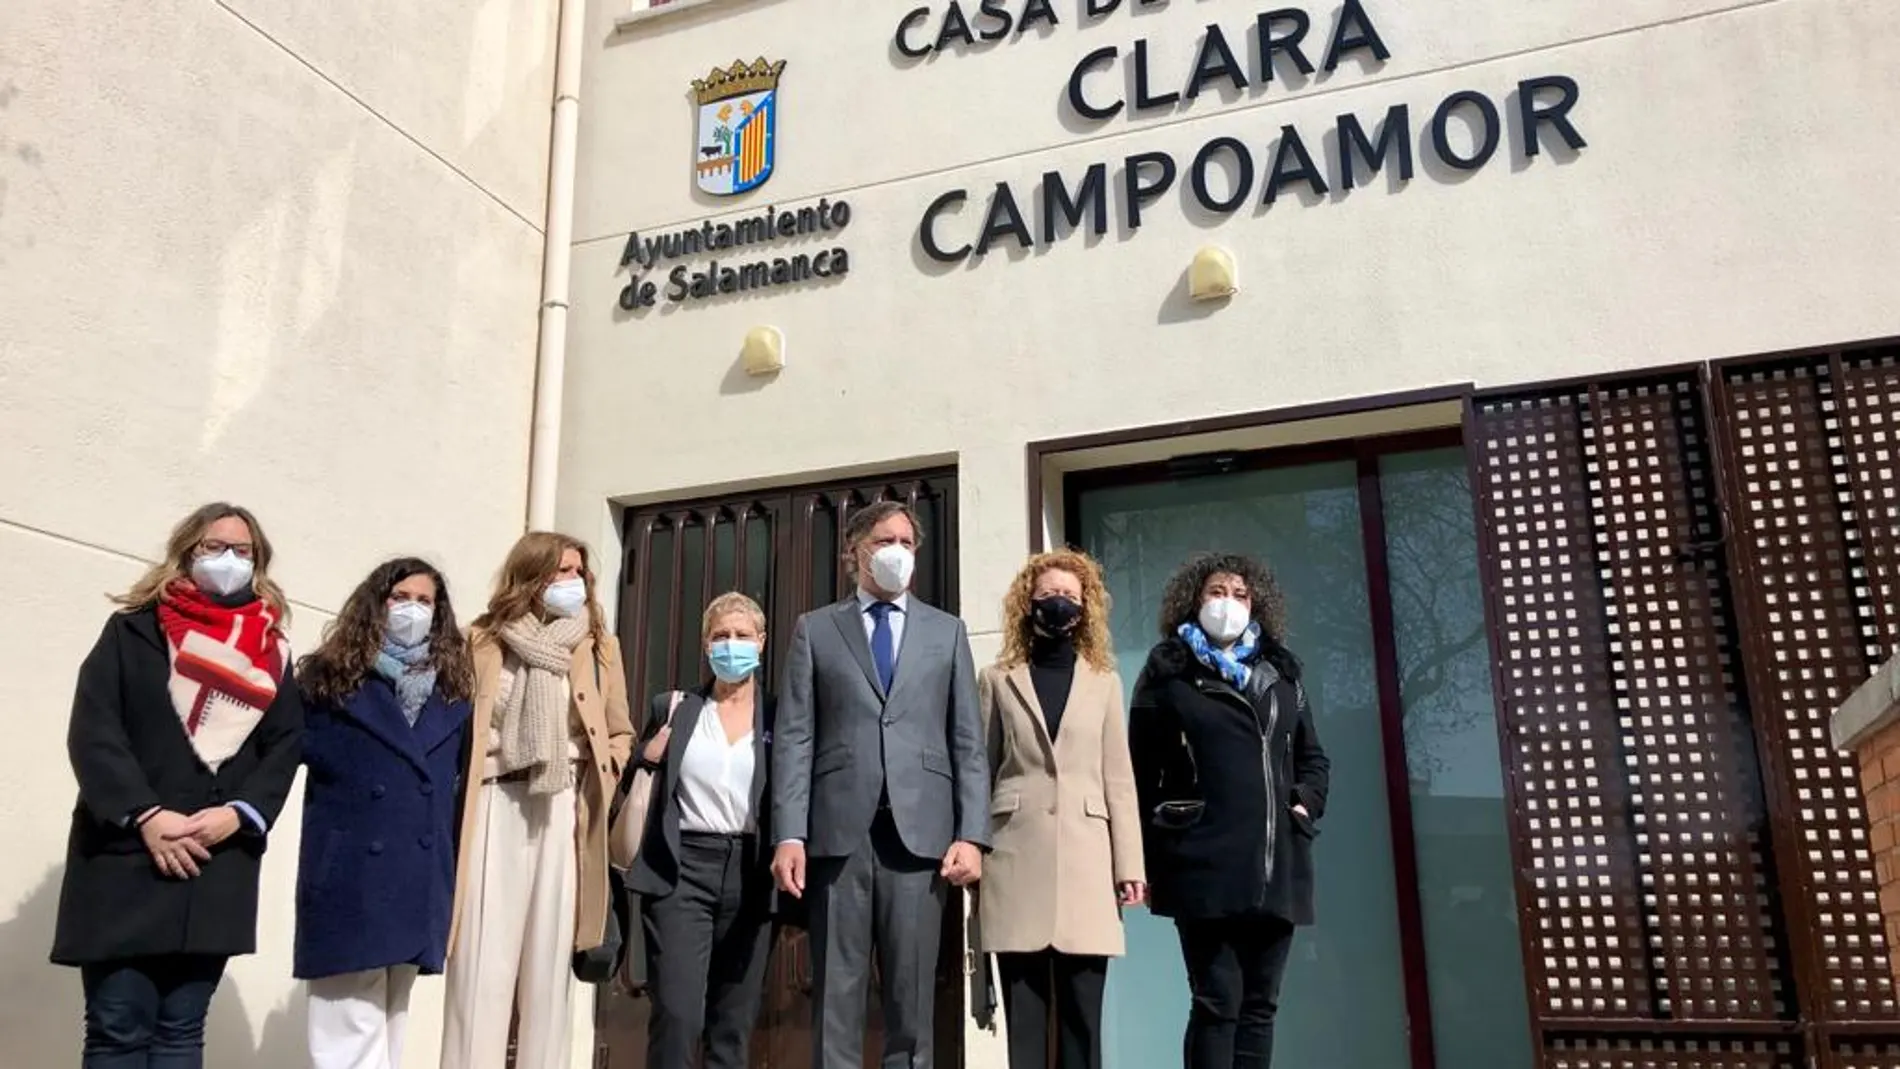 El alcalde de Salamanca, Carlos García-Carbayo, inaugura la Casa de la Mujer "Clara Campoamor"